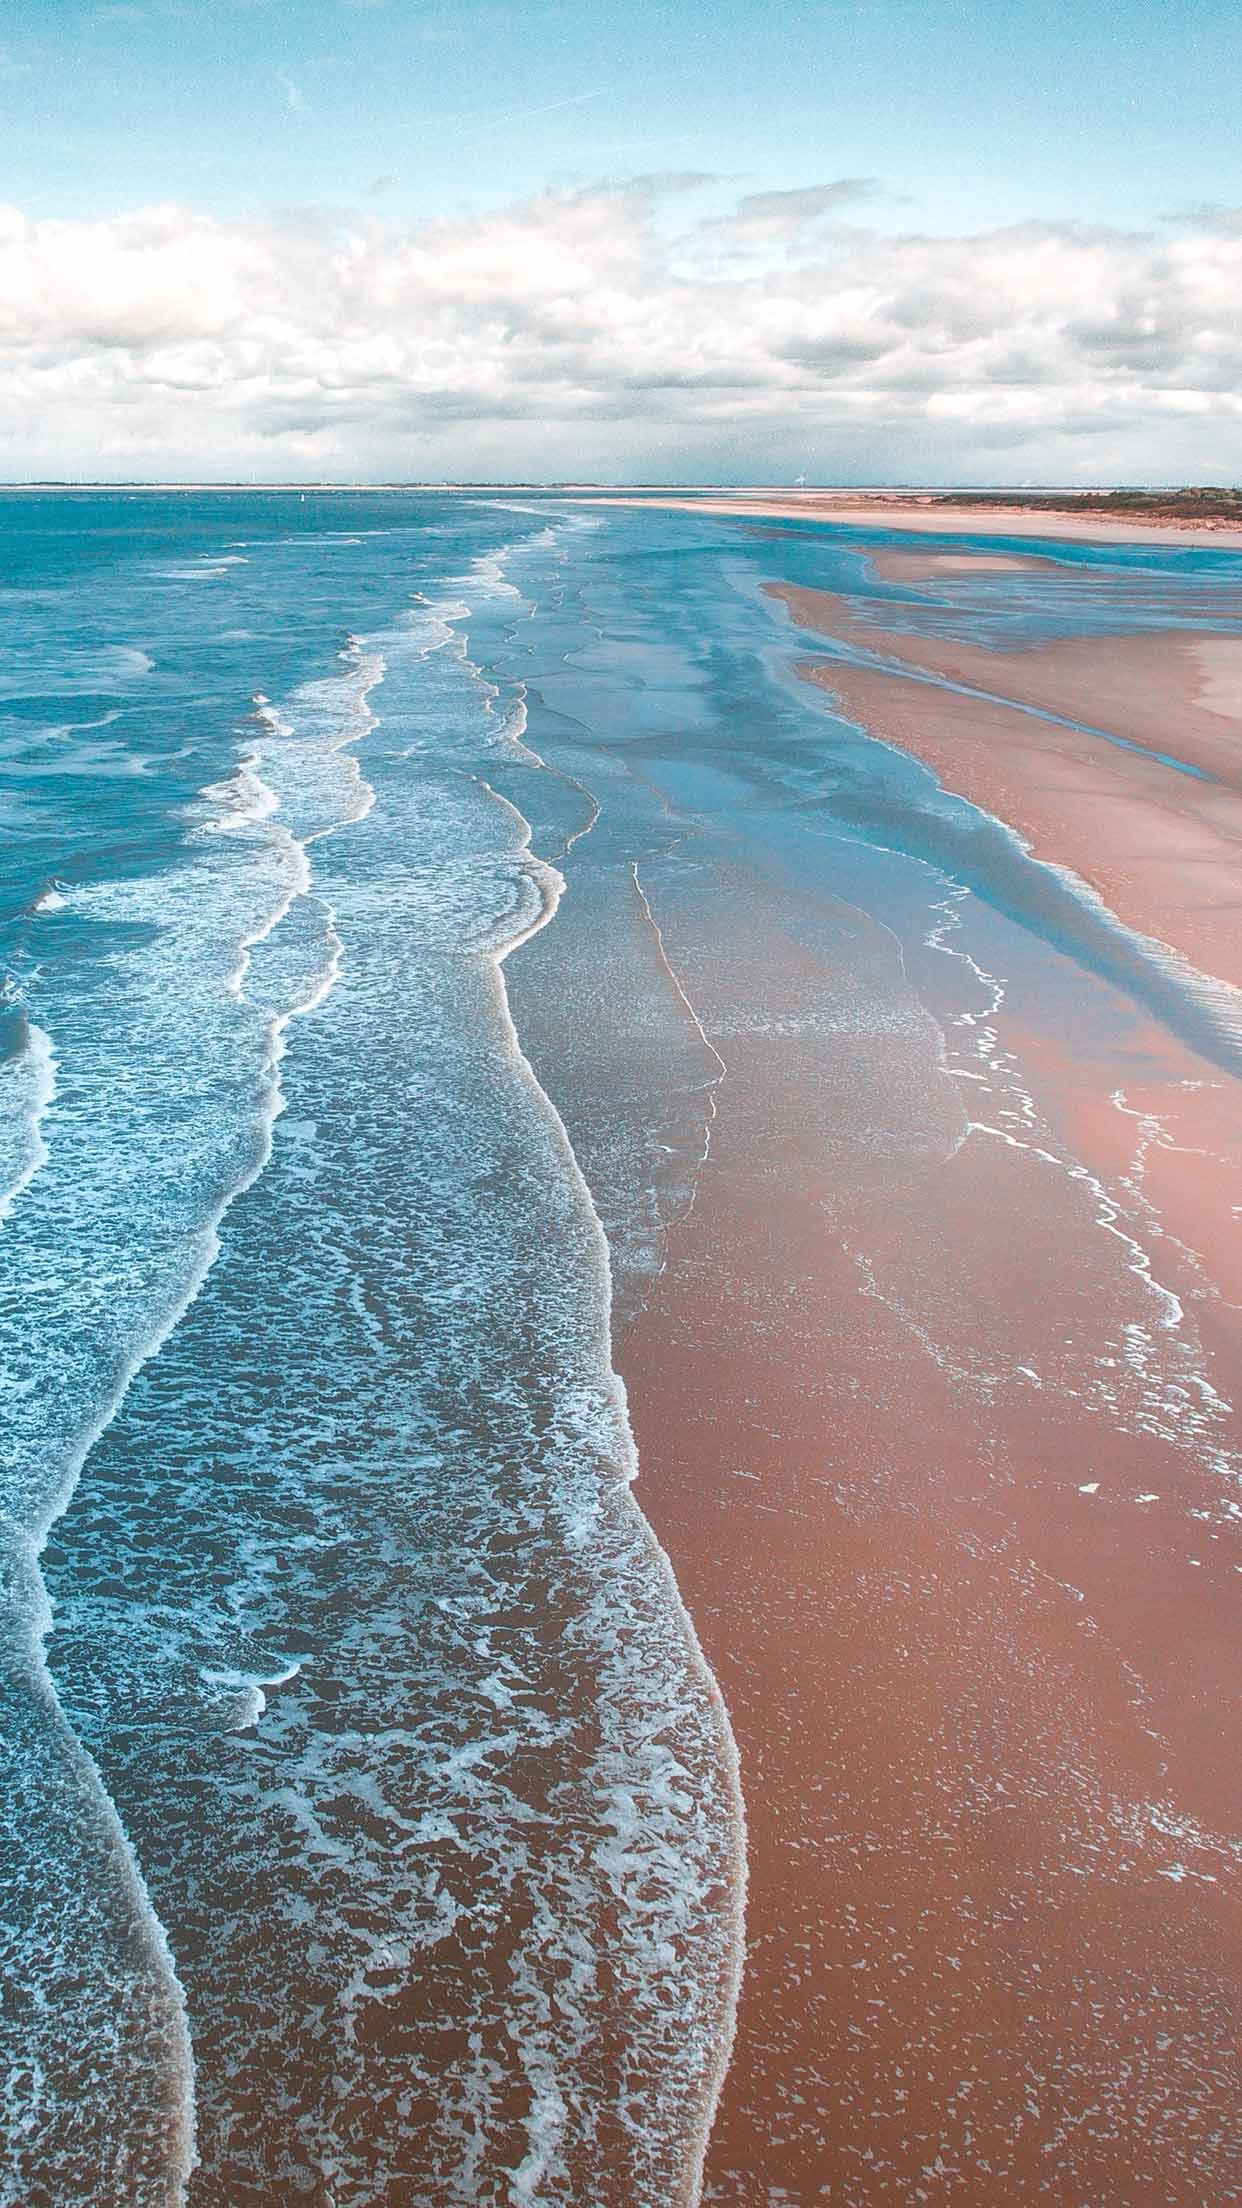 Bạn muốn có những wallpaper biển đẹp miễn phí cho chiếc iPhone XS của mình? Đừng bỏ lỡ cơ hội tuyệt vời này để tải xuống những hình nền ảnh biển đẹp chất lượng cao hoàn toàn miễn phí. Với những gam màu tươi sáng và những hình ảnh đẹp như mơ, chiếc iPhone của bạn sẽ trở nên độc đáo hơn bao giờ hết. Hãy cùng tải xuống ngay các wallpaper biển cho iPhone XS của bạn và tận hưởng vẻ đẹp của đại dương trong tầm tay bạn.